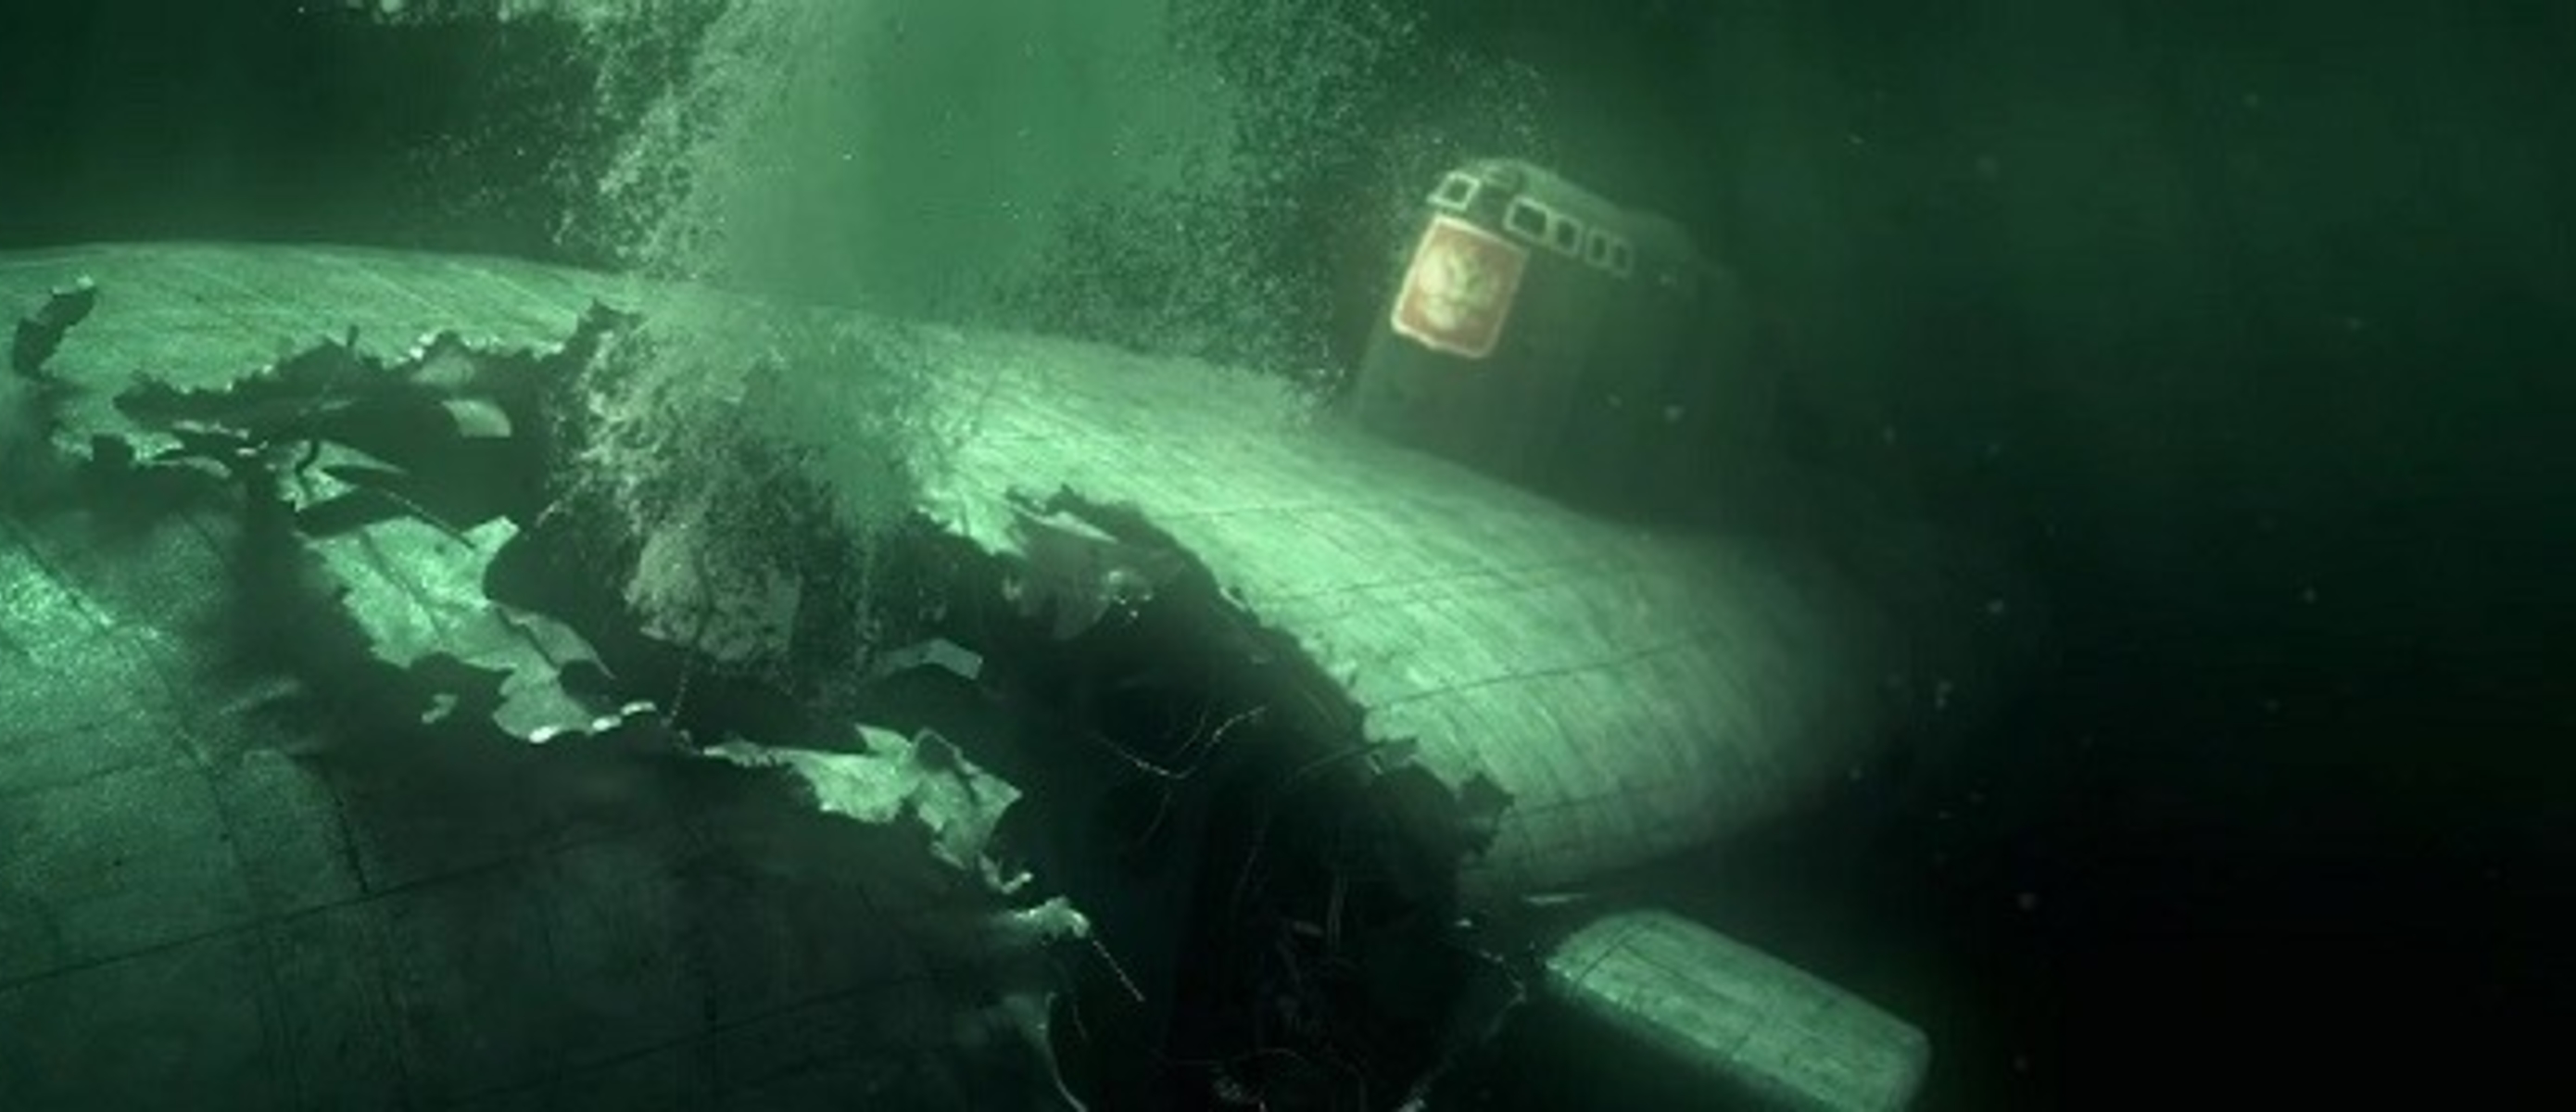 Подводная лодка сколько погибло. Подводная лодка к-141 «Курск». Курск 141 атомная подводная лодка. К-141 «Курск». Курск подводная лодка гибель.